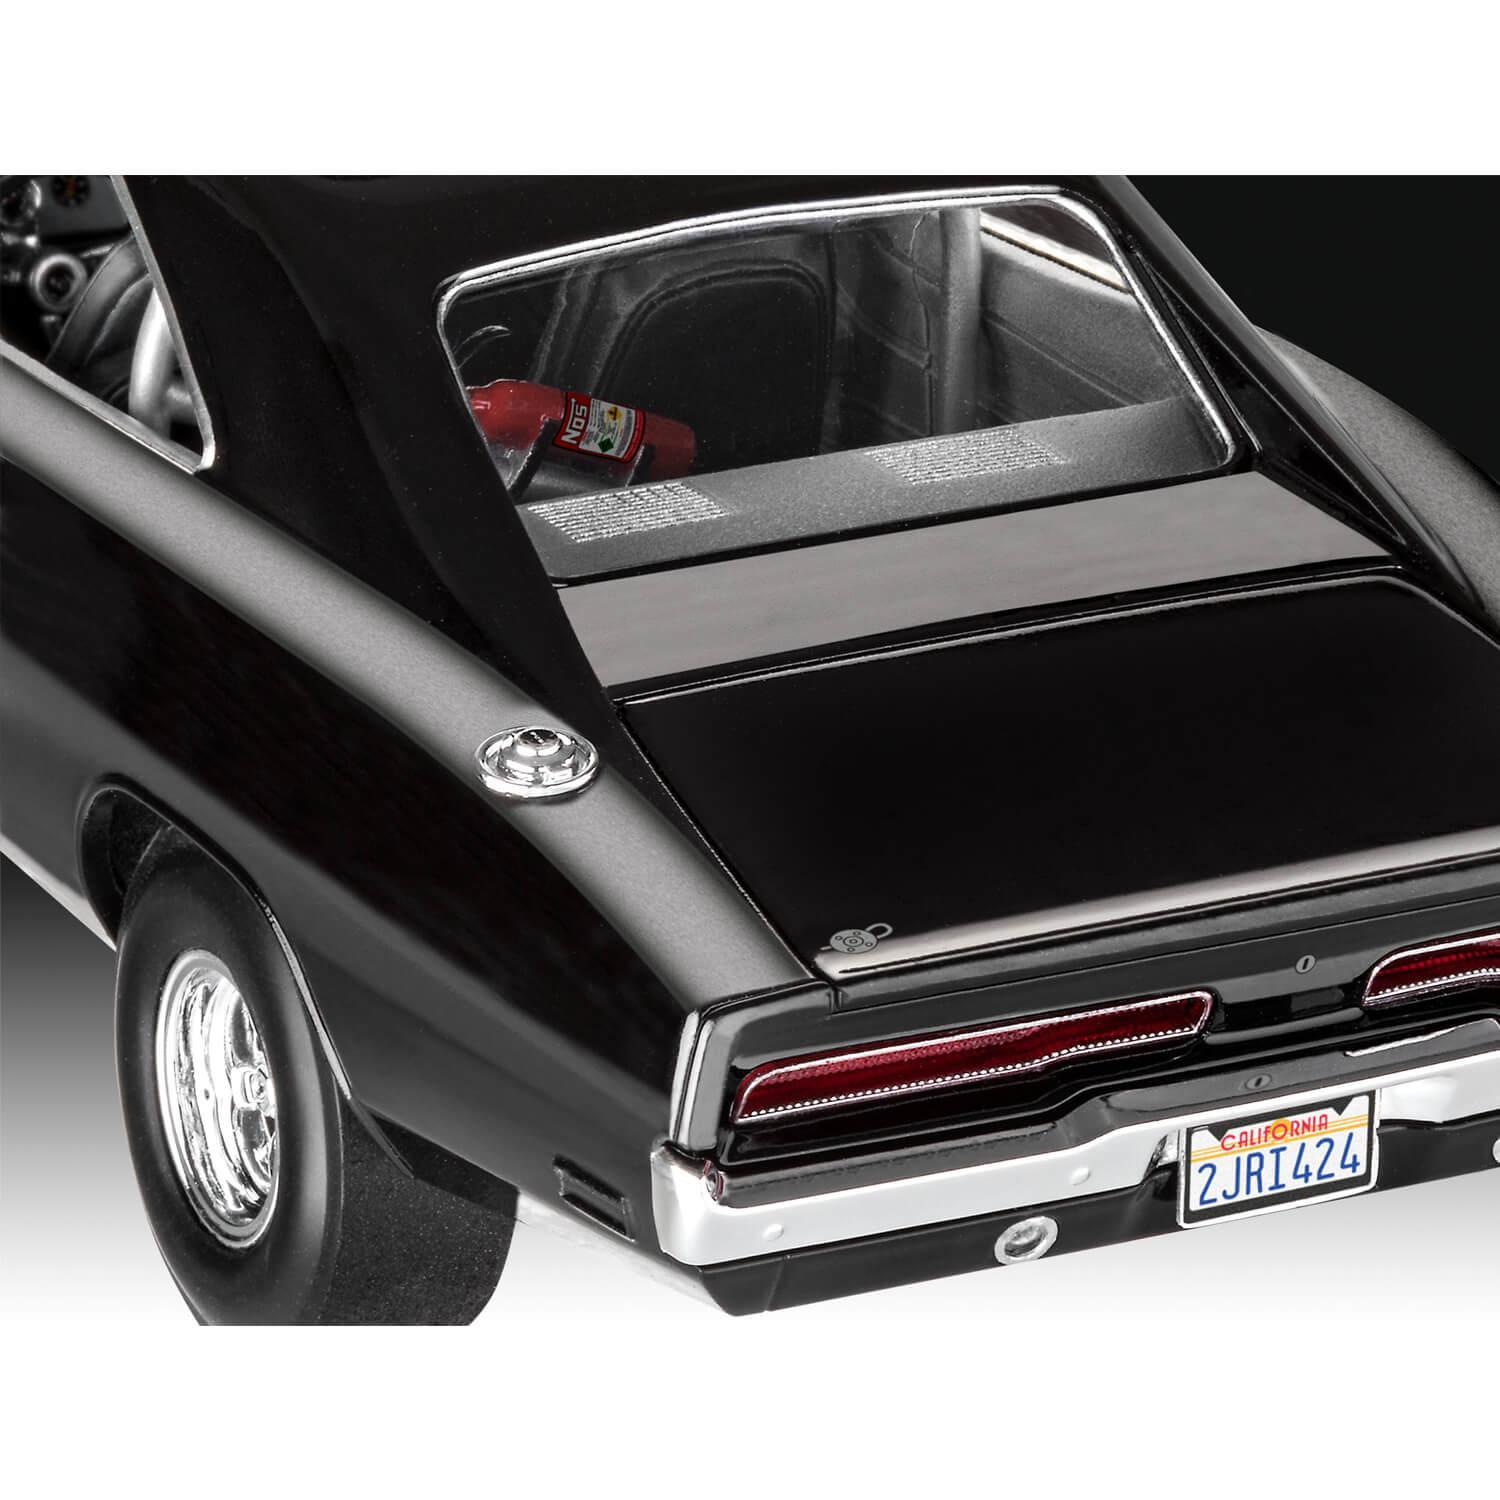 Maquette voiture : Model Set : Fast & Furious Dominics 1970 Dodge